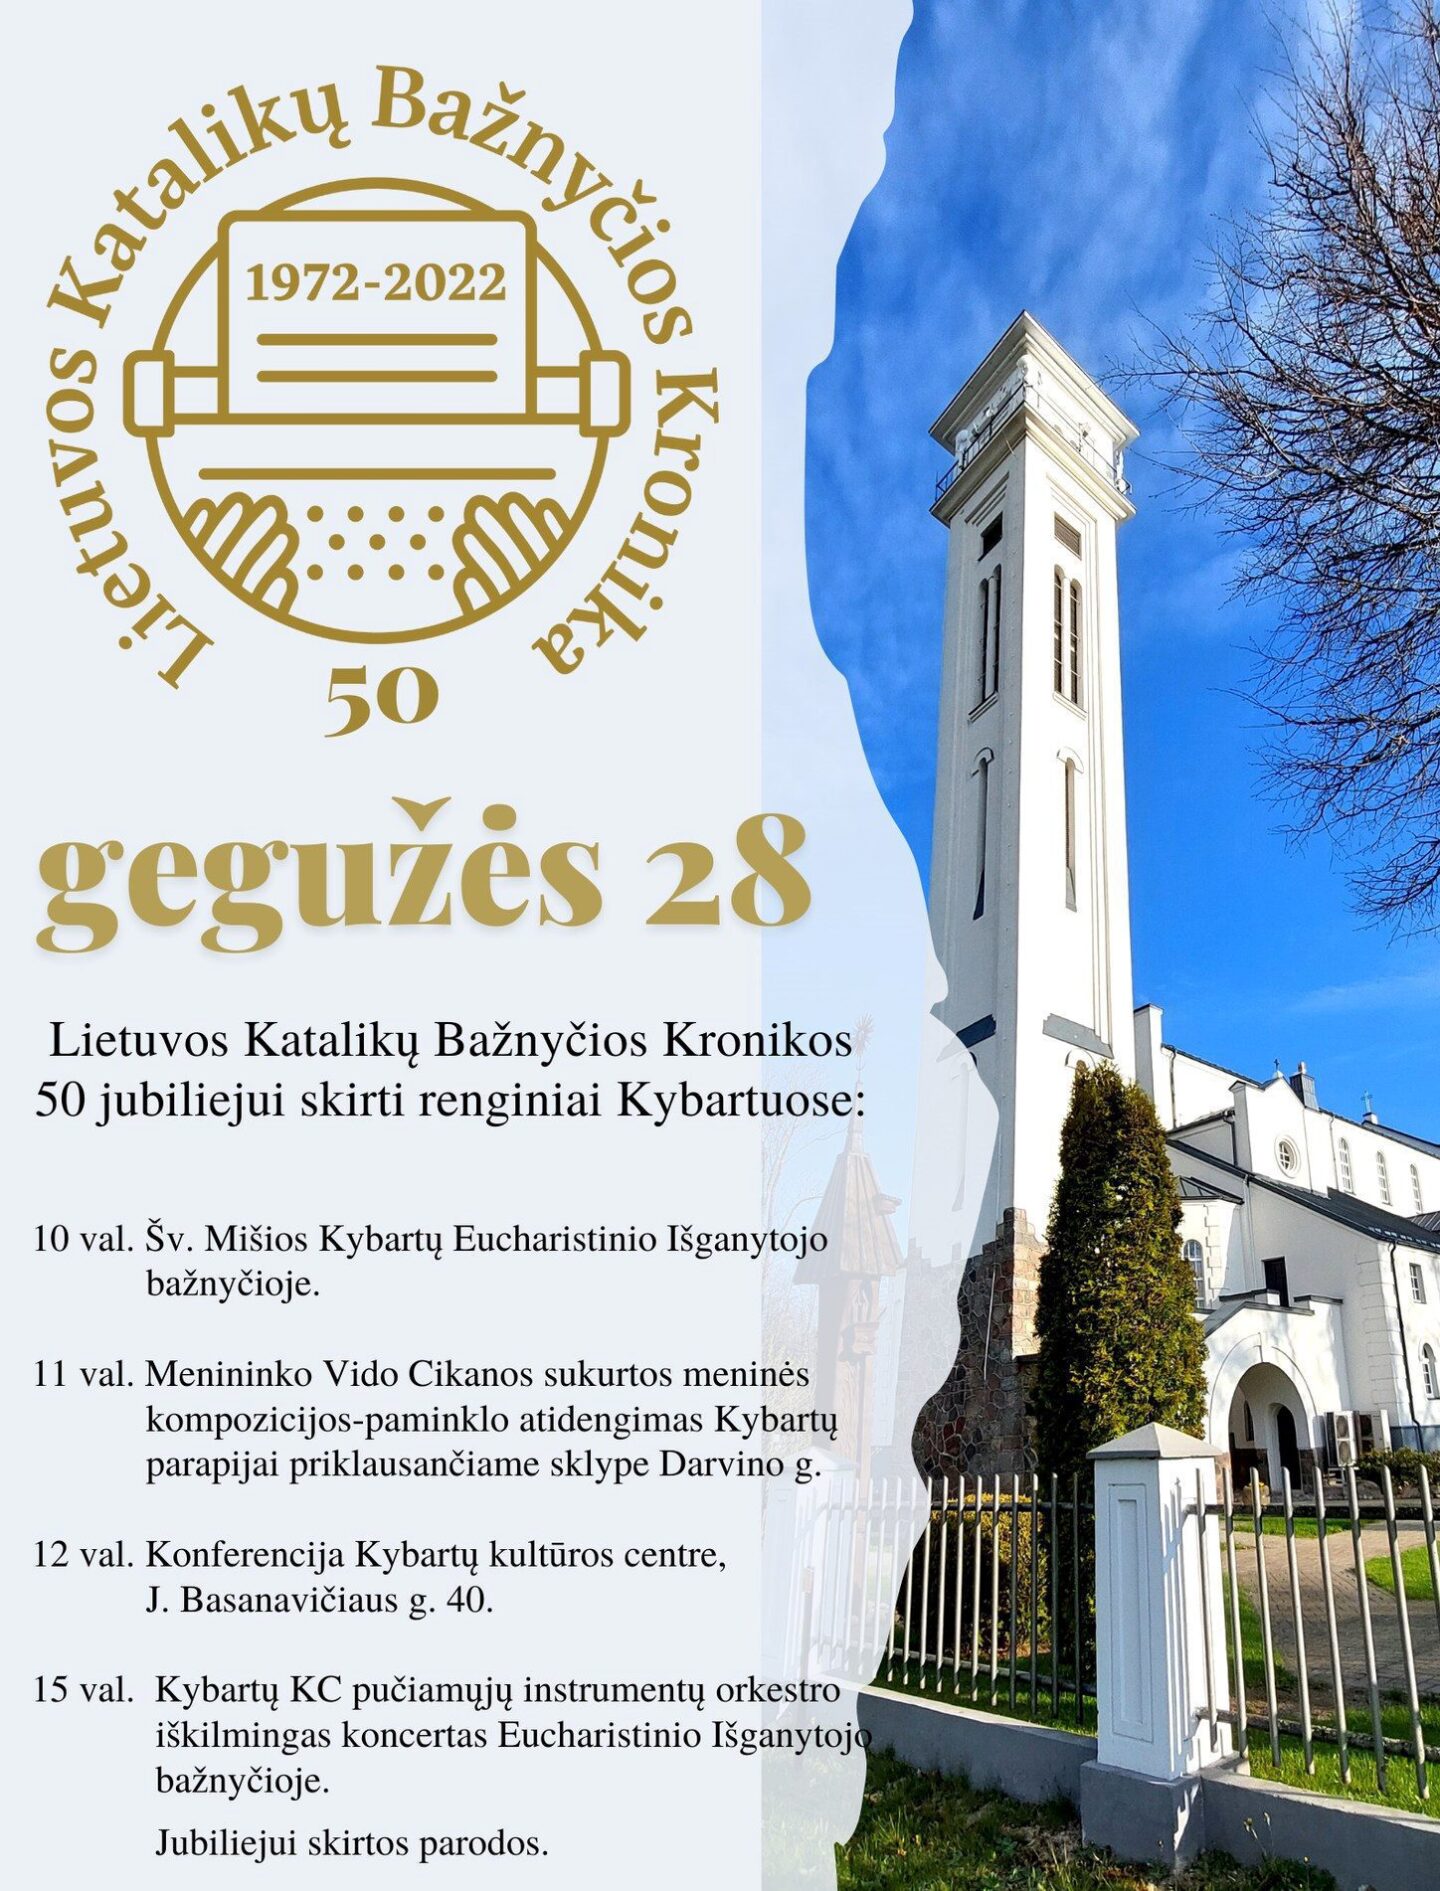 Lietuvos Katalikų Bažnyčios Kronikos jubiliejus Kybartuose